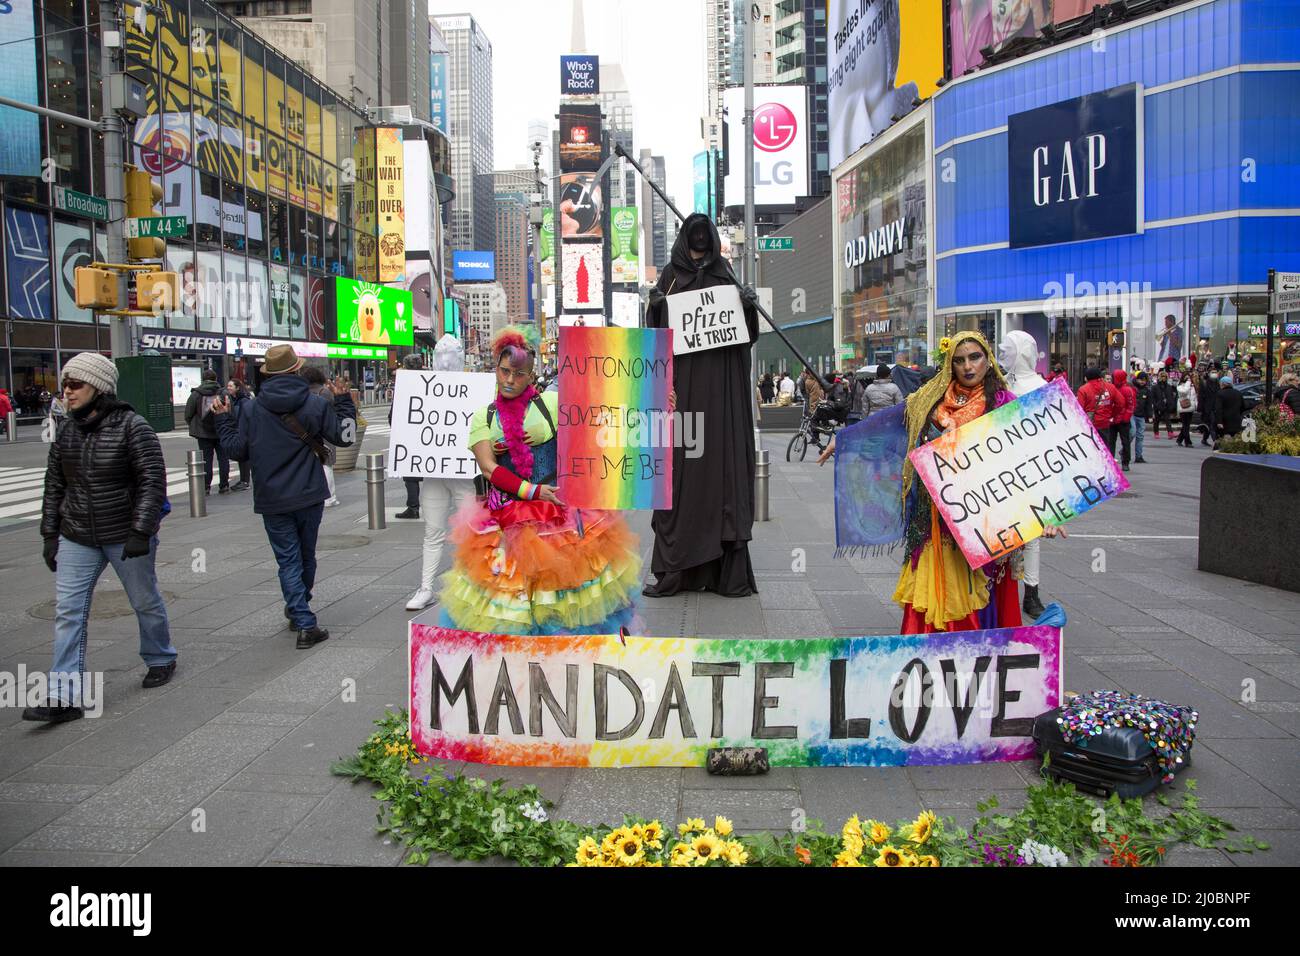 Mandate Love Group tritt auf dem Times Square mit der Botschaft auf, dass jede Person das Recht hat zu entscheiden, was sie in ihren eigenen Körper stecken soll. Sie sind gegen das obligatorische Impfmandat und fördern die Idee der Liebe. NYC. Stockfoto